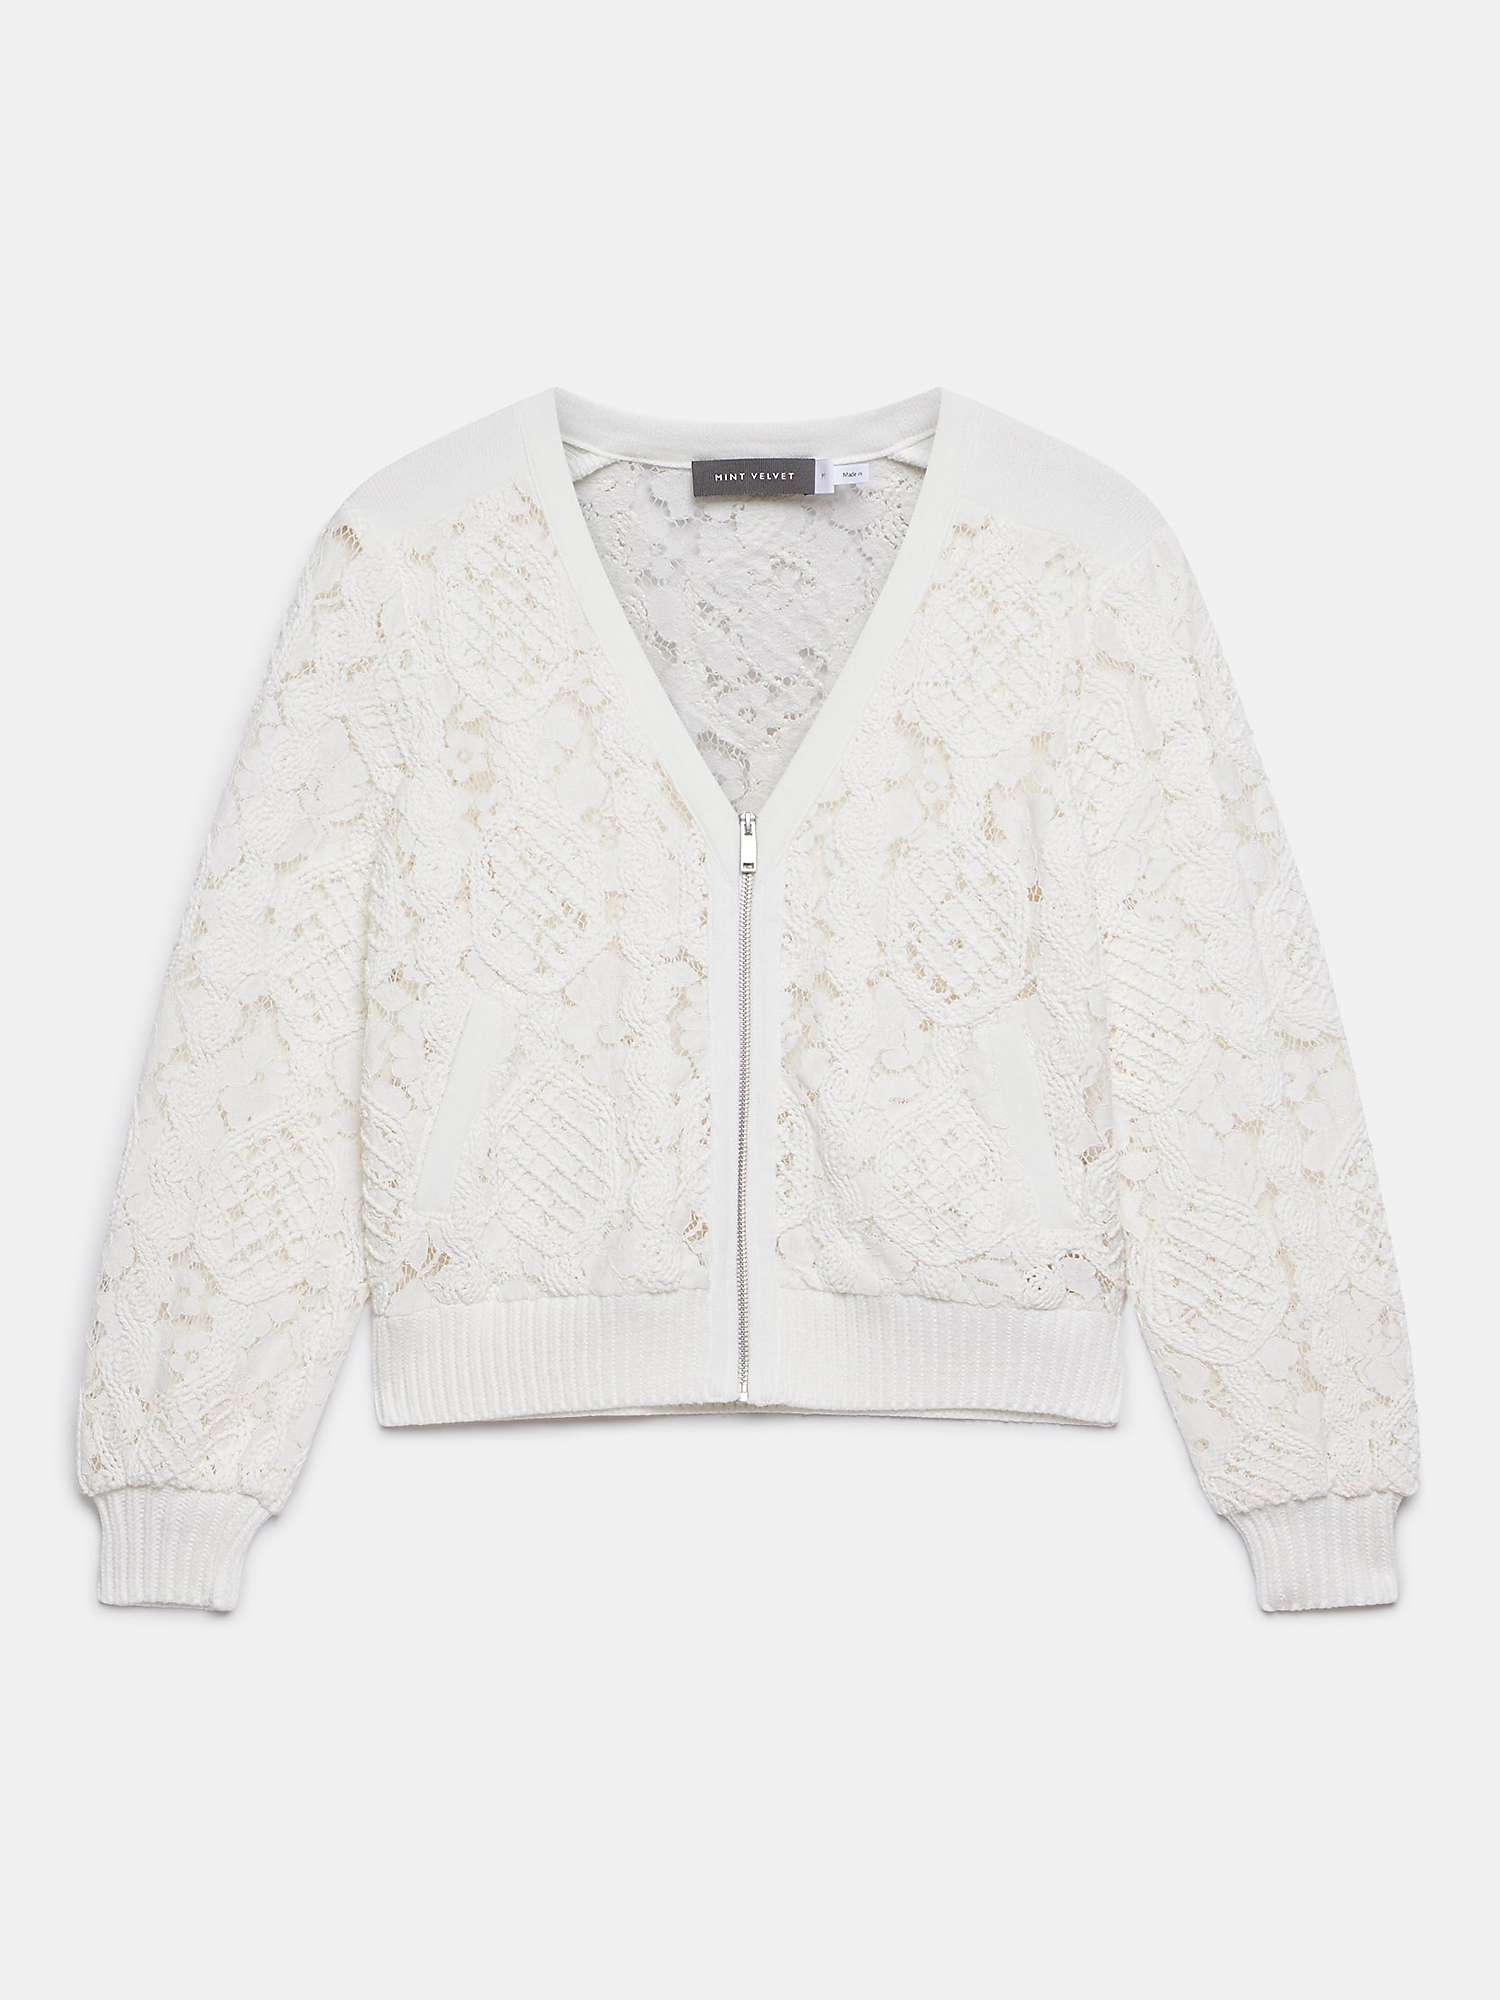 Buy Mint Velvet Lace Bomber Jacket, White Ivory Online at johnlewis.com